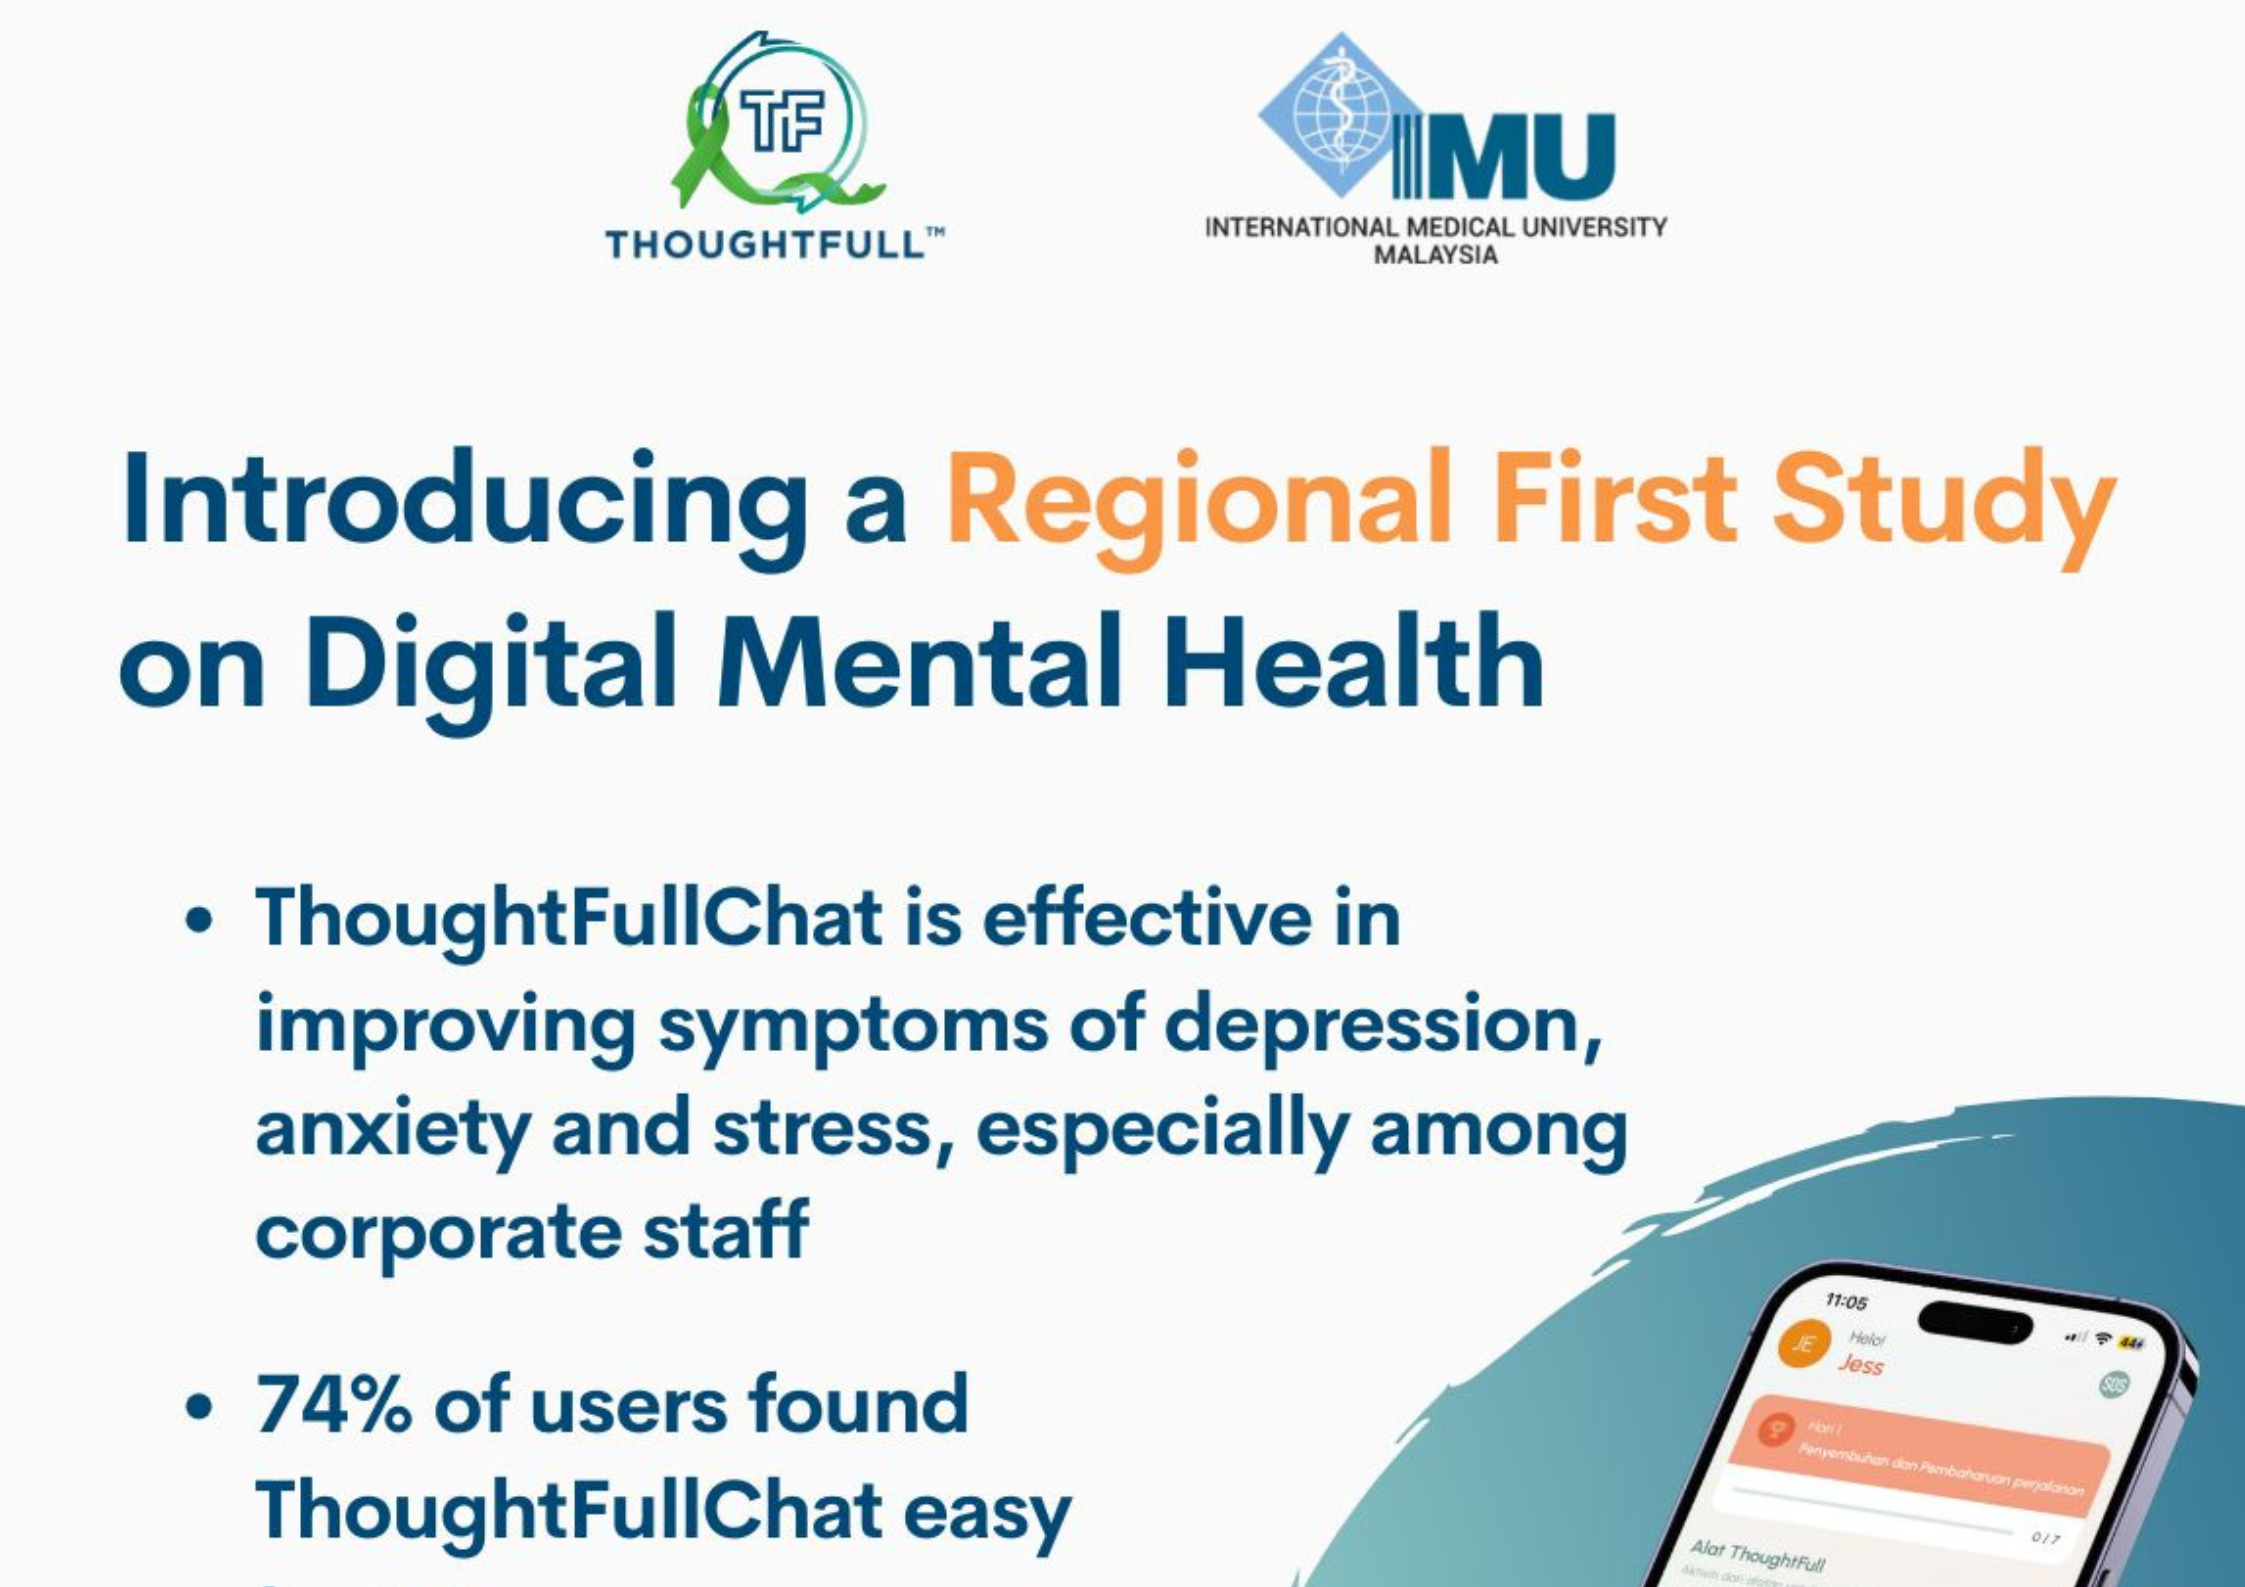 Regional First Study on Digital Mental Health